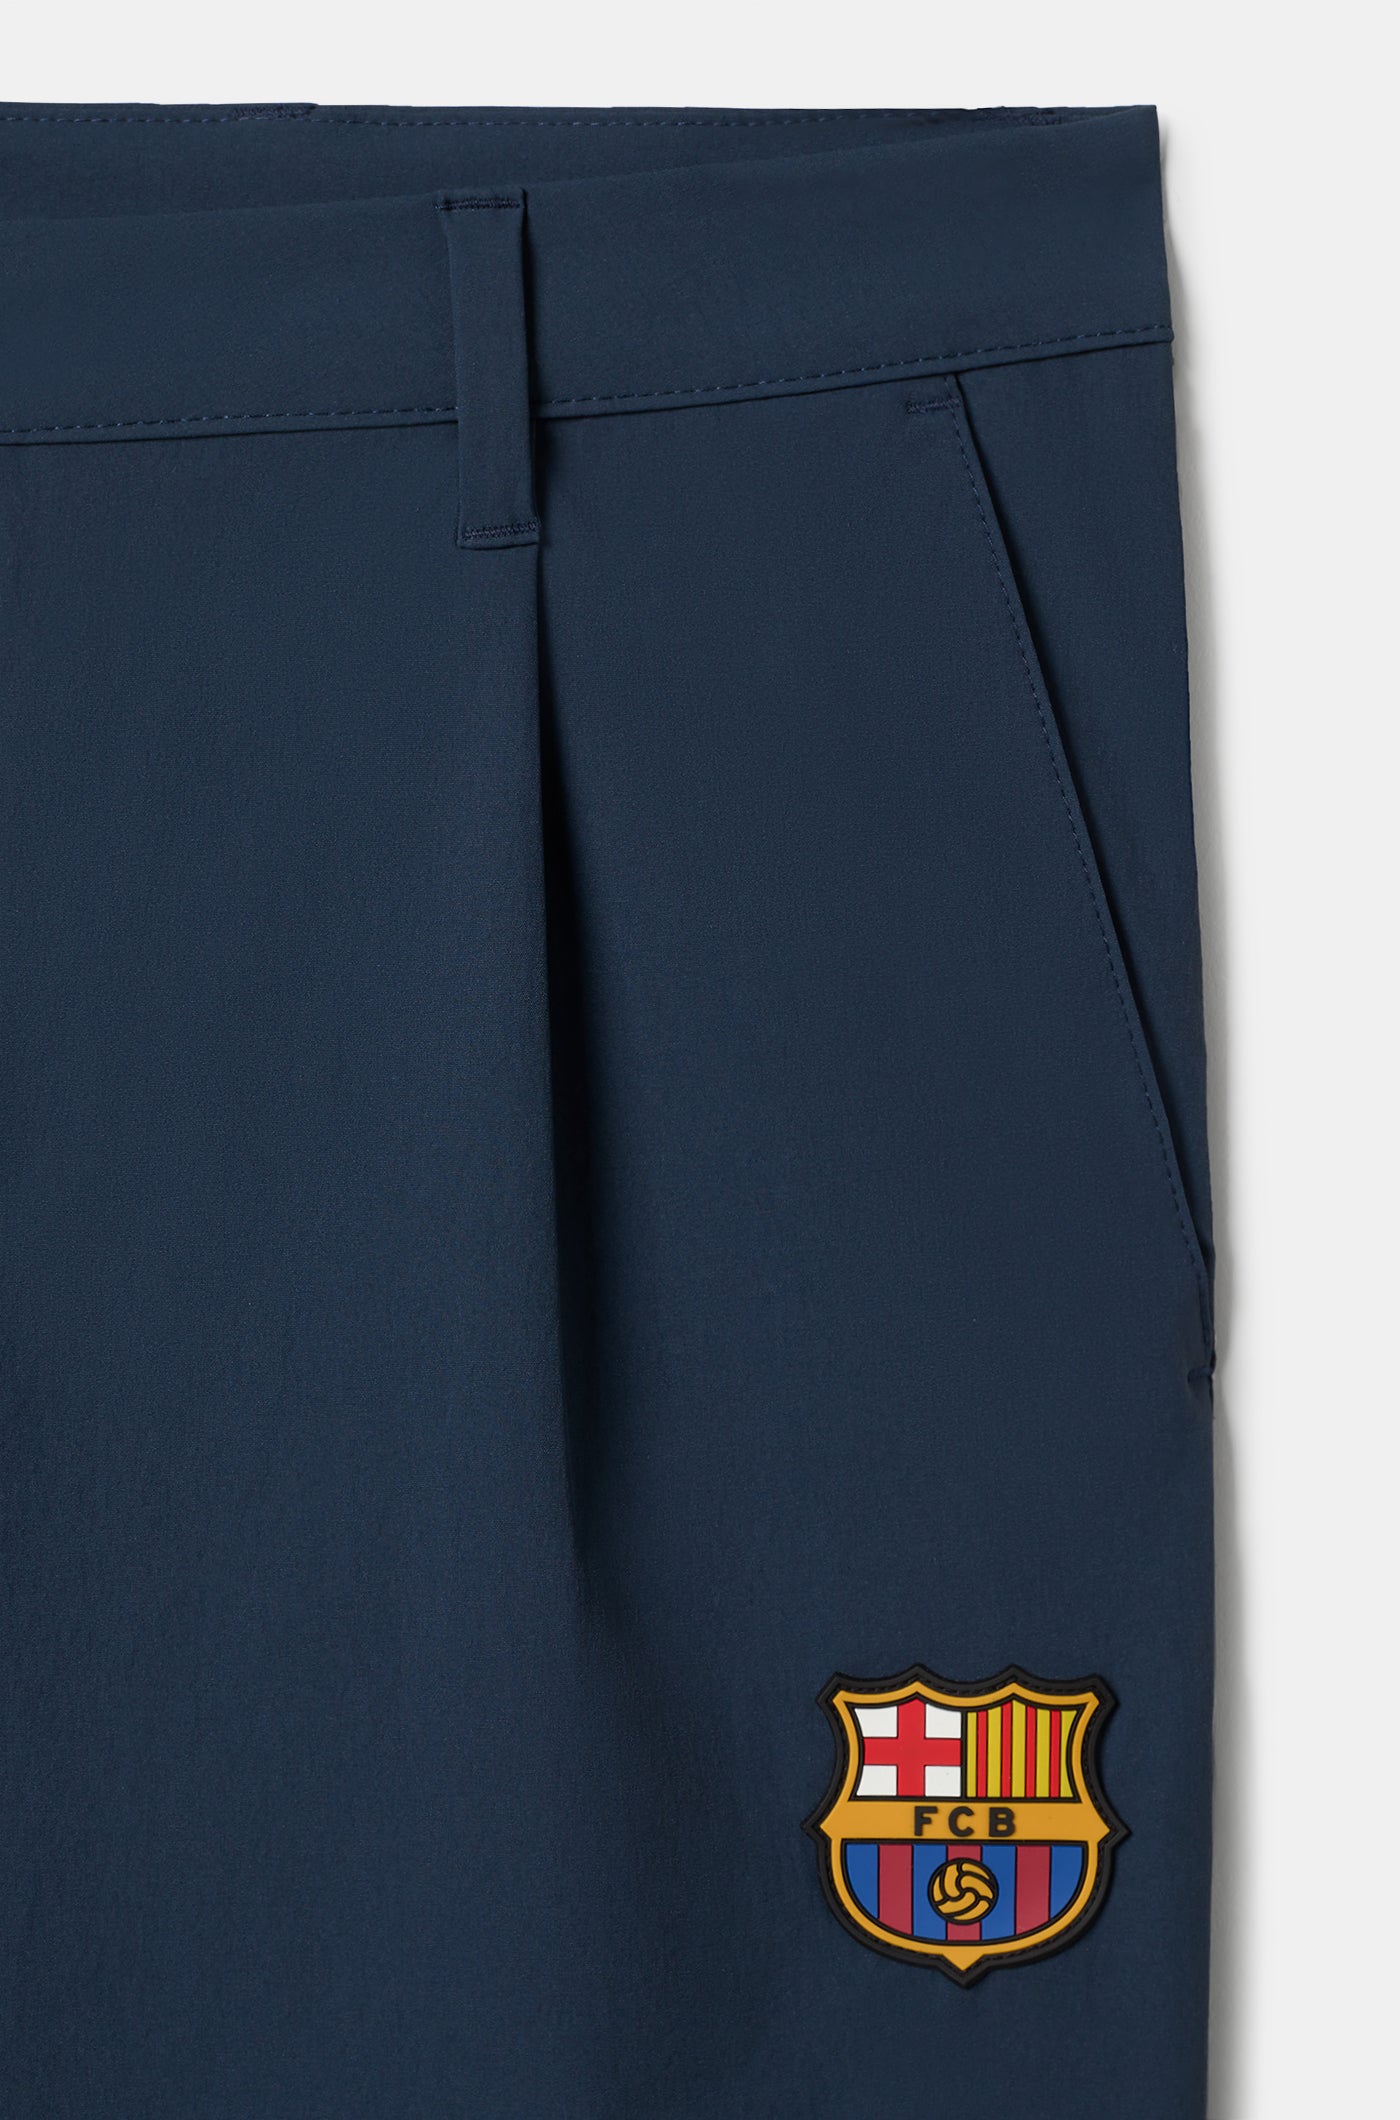 Barça navy blue pants